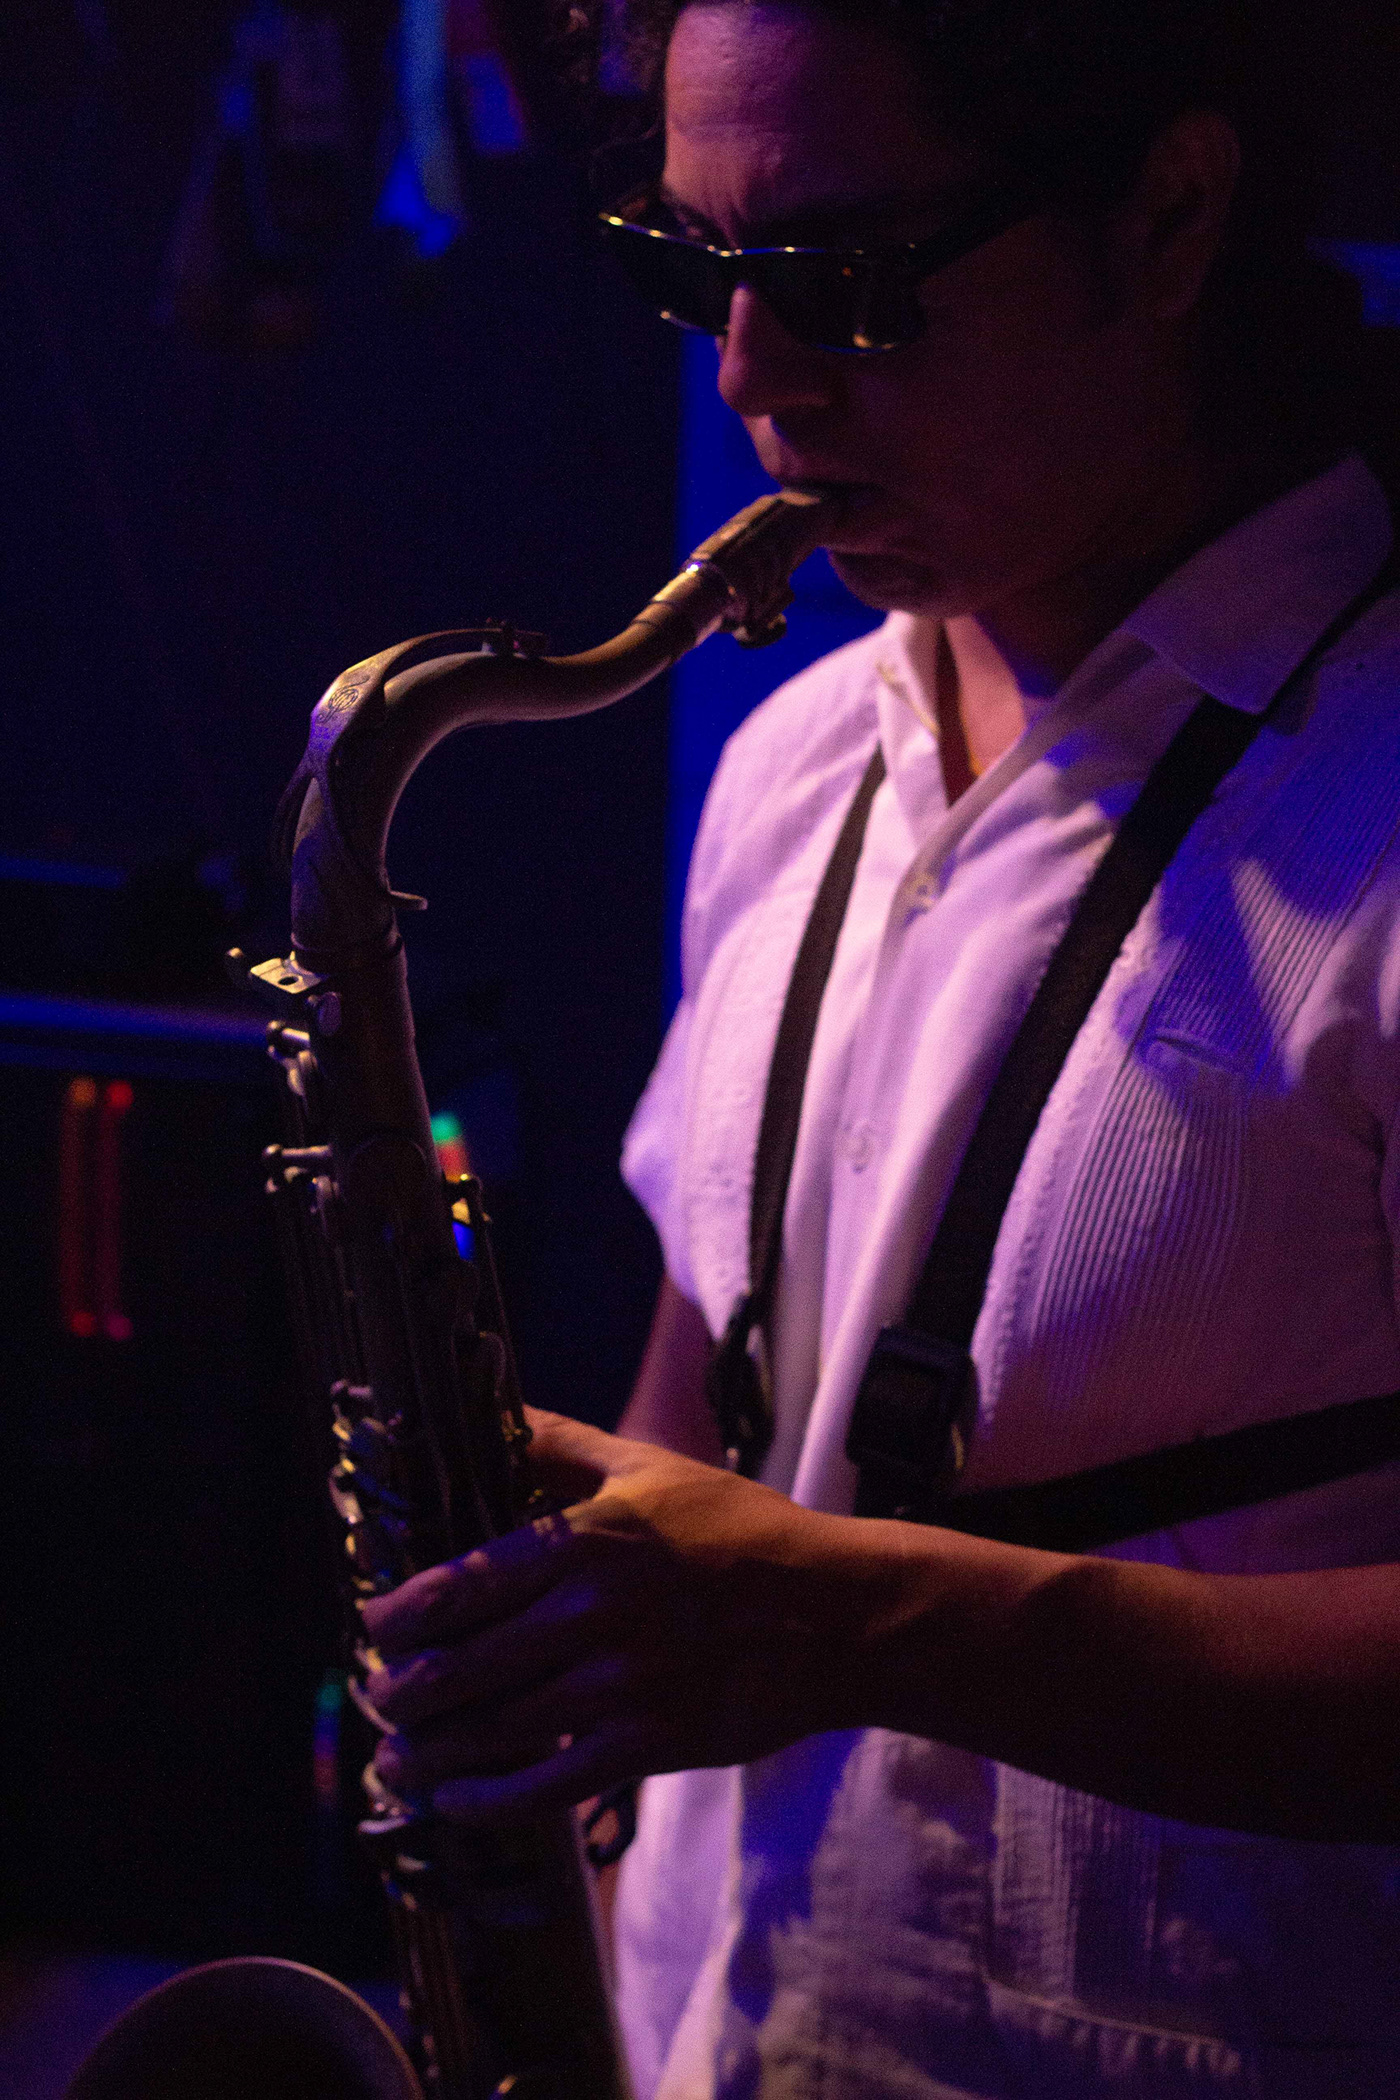 sax saxofon musica estudio de musica